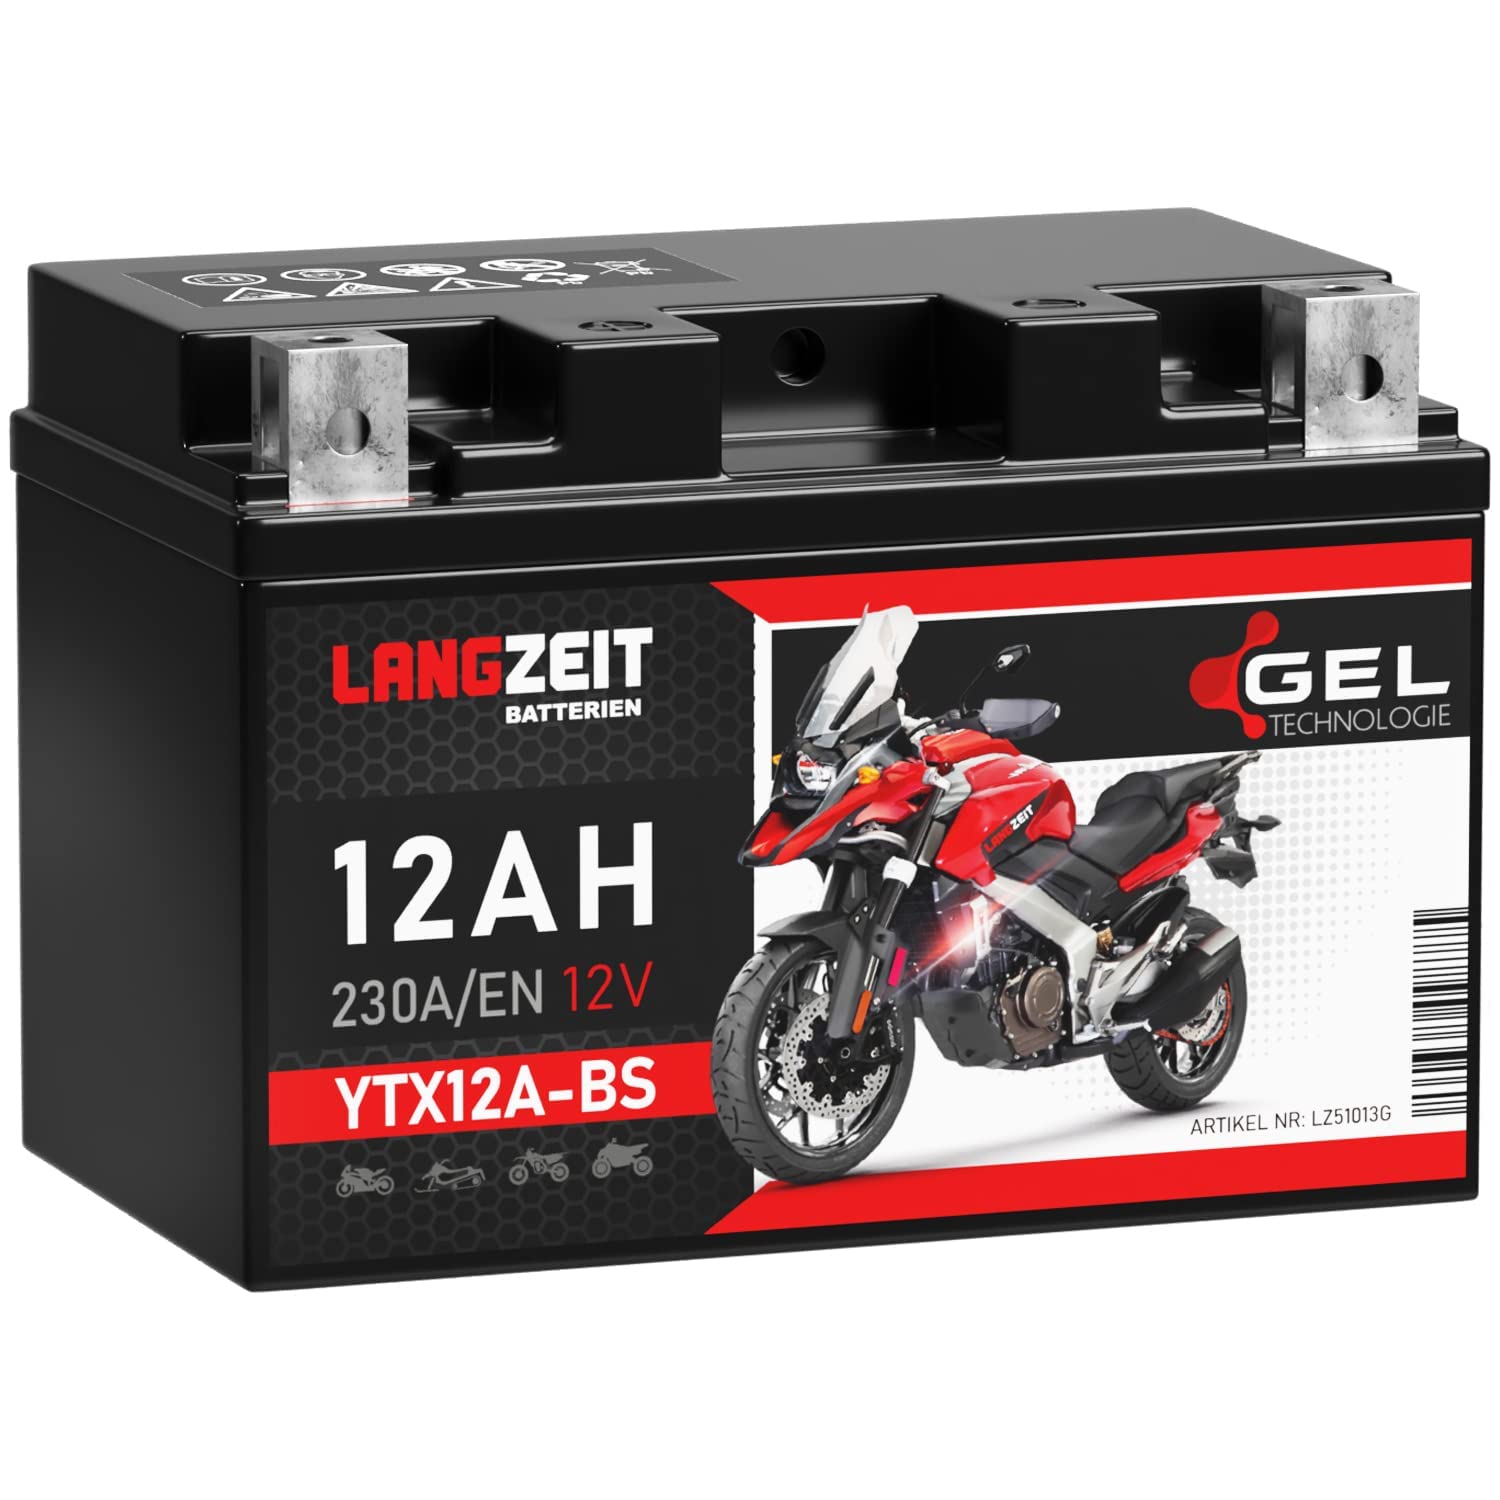 LANGZEIT YTX12A-BS GEL Motorradbatterie 12V 12Ah 230A/EN 51013 YTZ12S GT12A-BS CTX12A-BS Gel Batterie 12V doppelte Lebensdauer vorgeladen auslaufsicher wartungsfrei ersetzt 10Ah von LANGZEIT Batterien